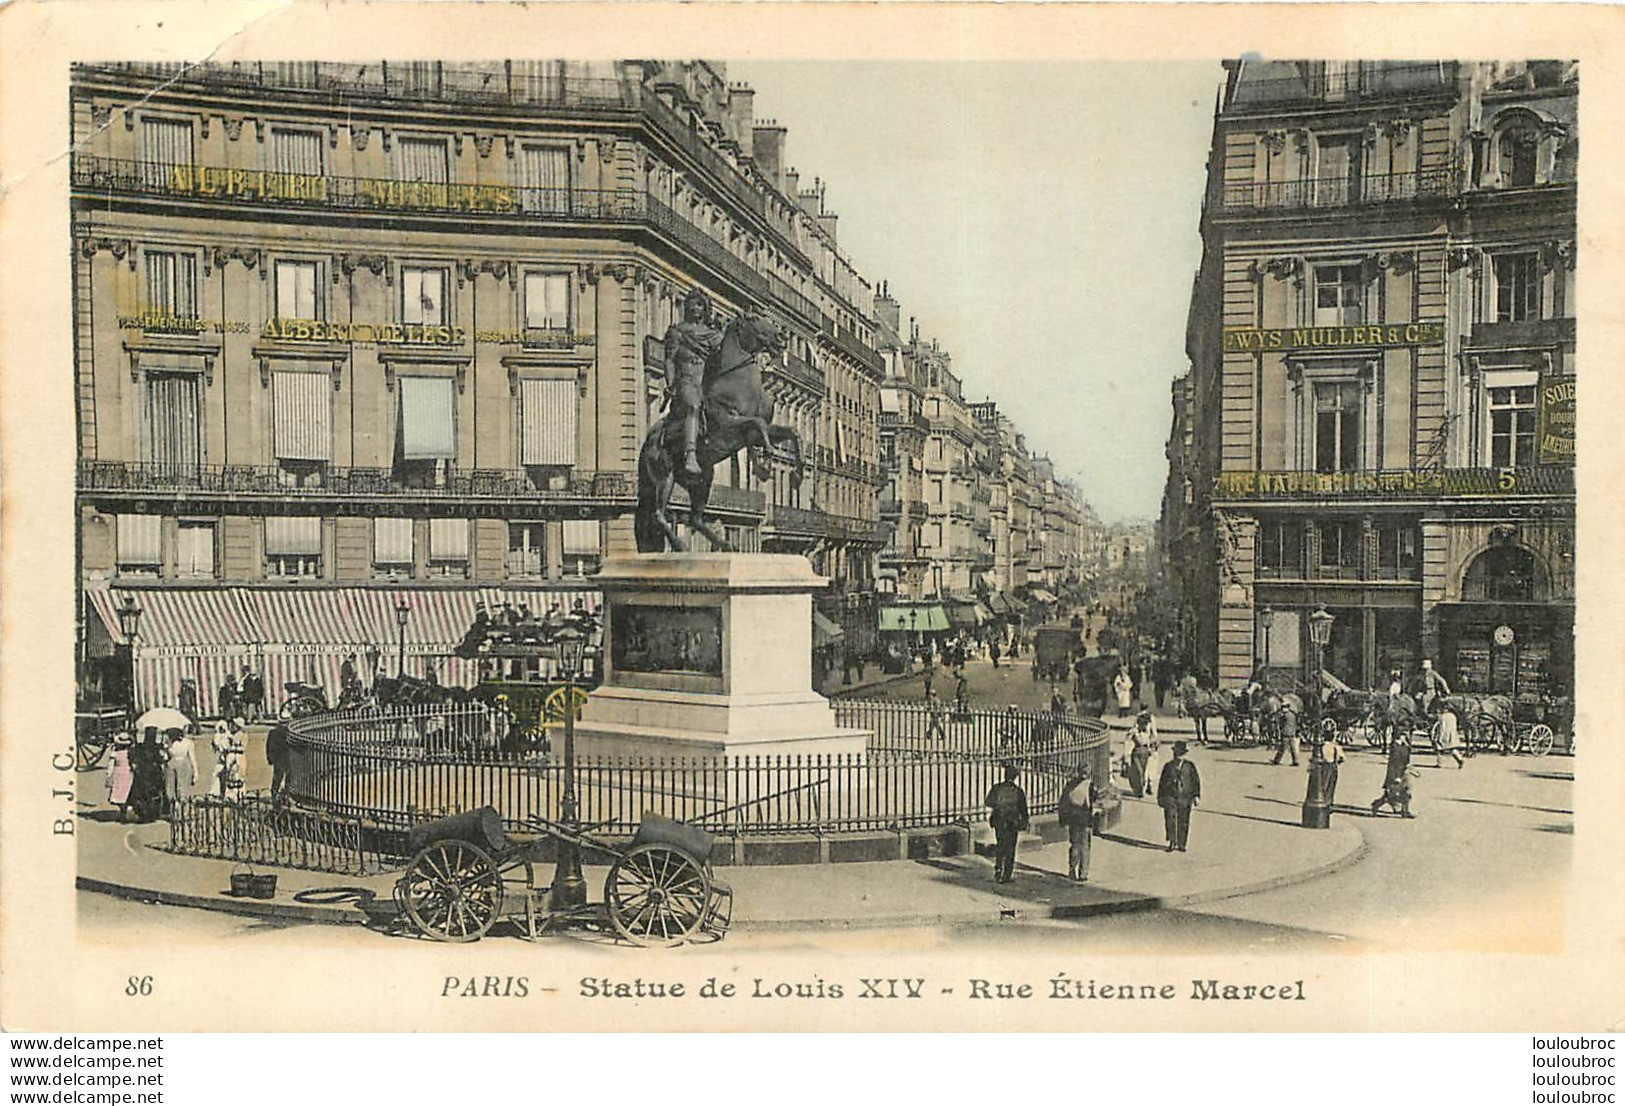 PARIS II STATUE DE LOUIS XIV RUE ETIENNE MARCEL - Paris (02)